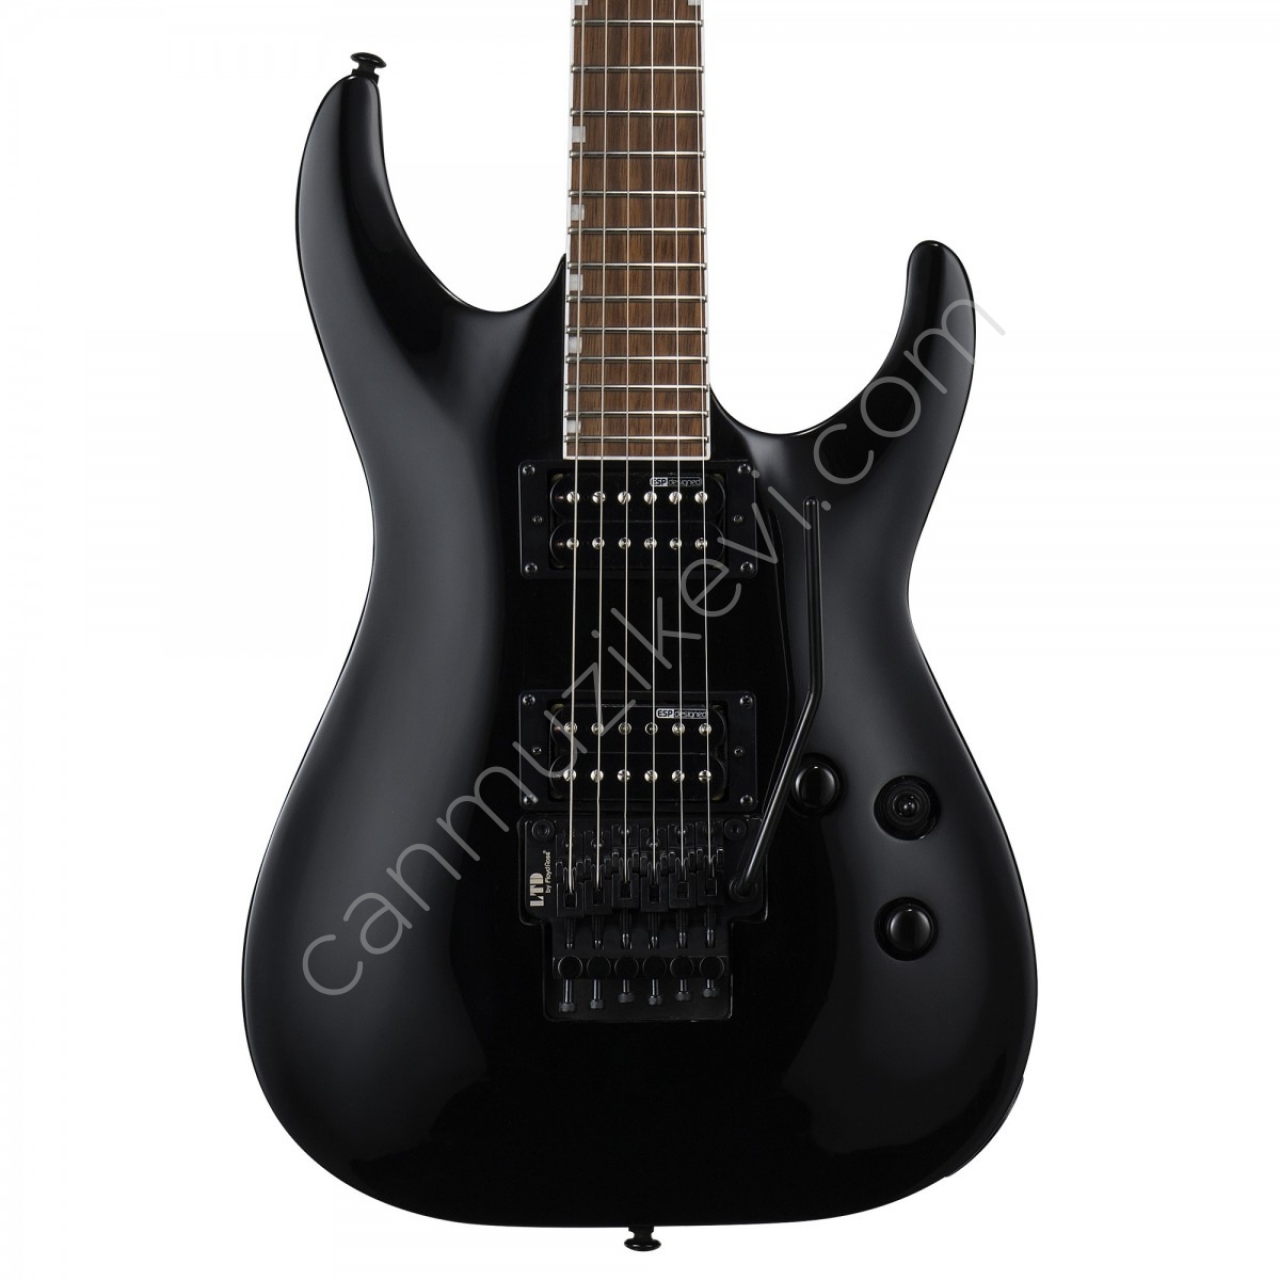 ESP LTD MH-200 Siyah Elektro Gitar